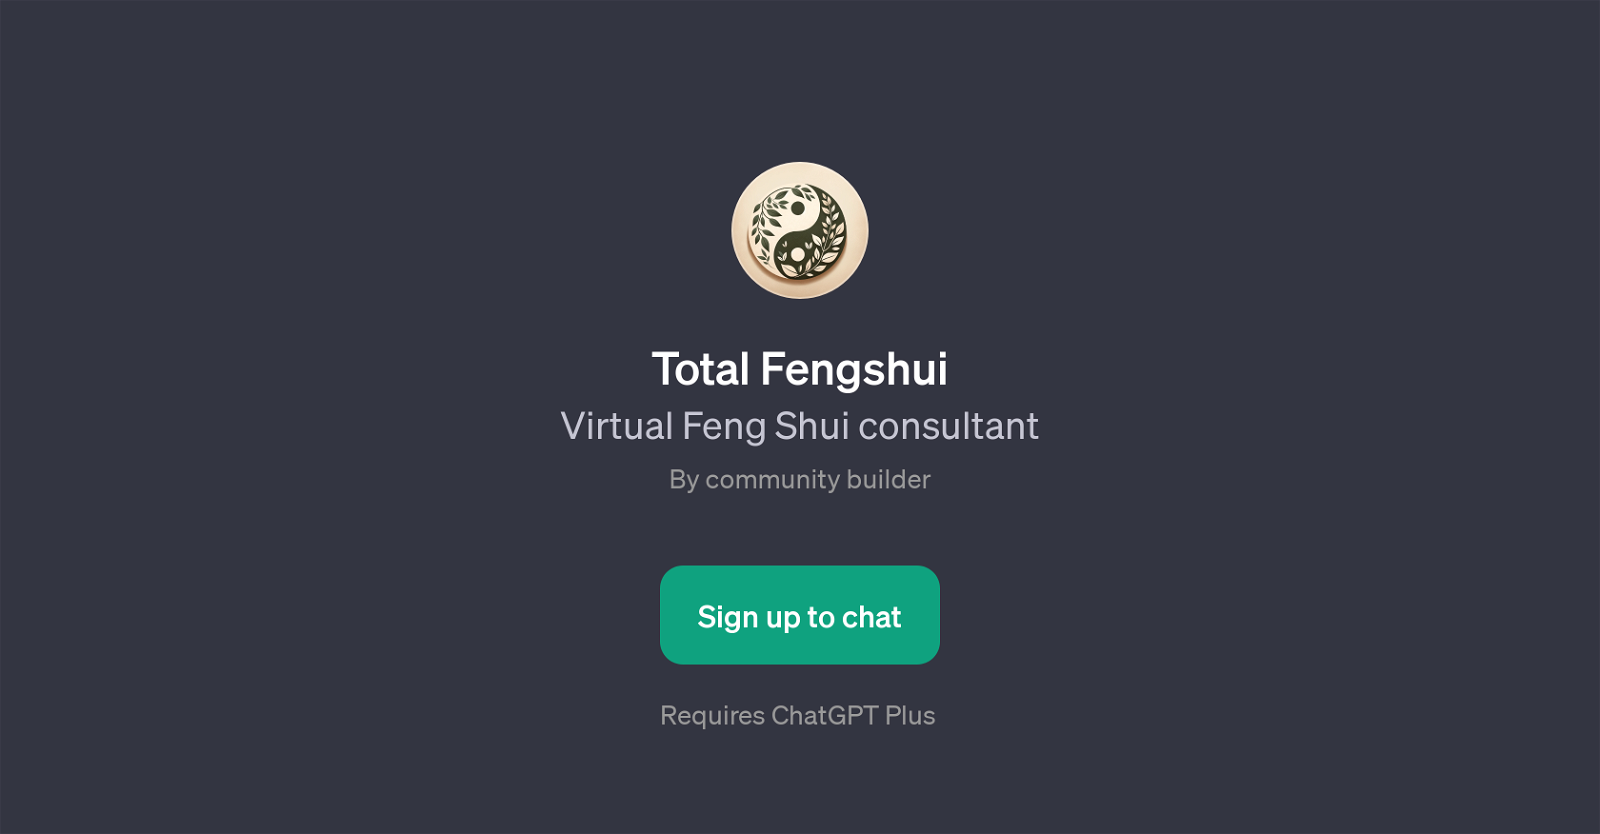 Total Fengshui website